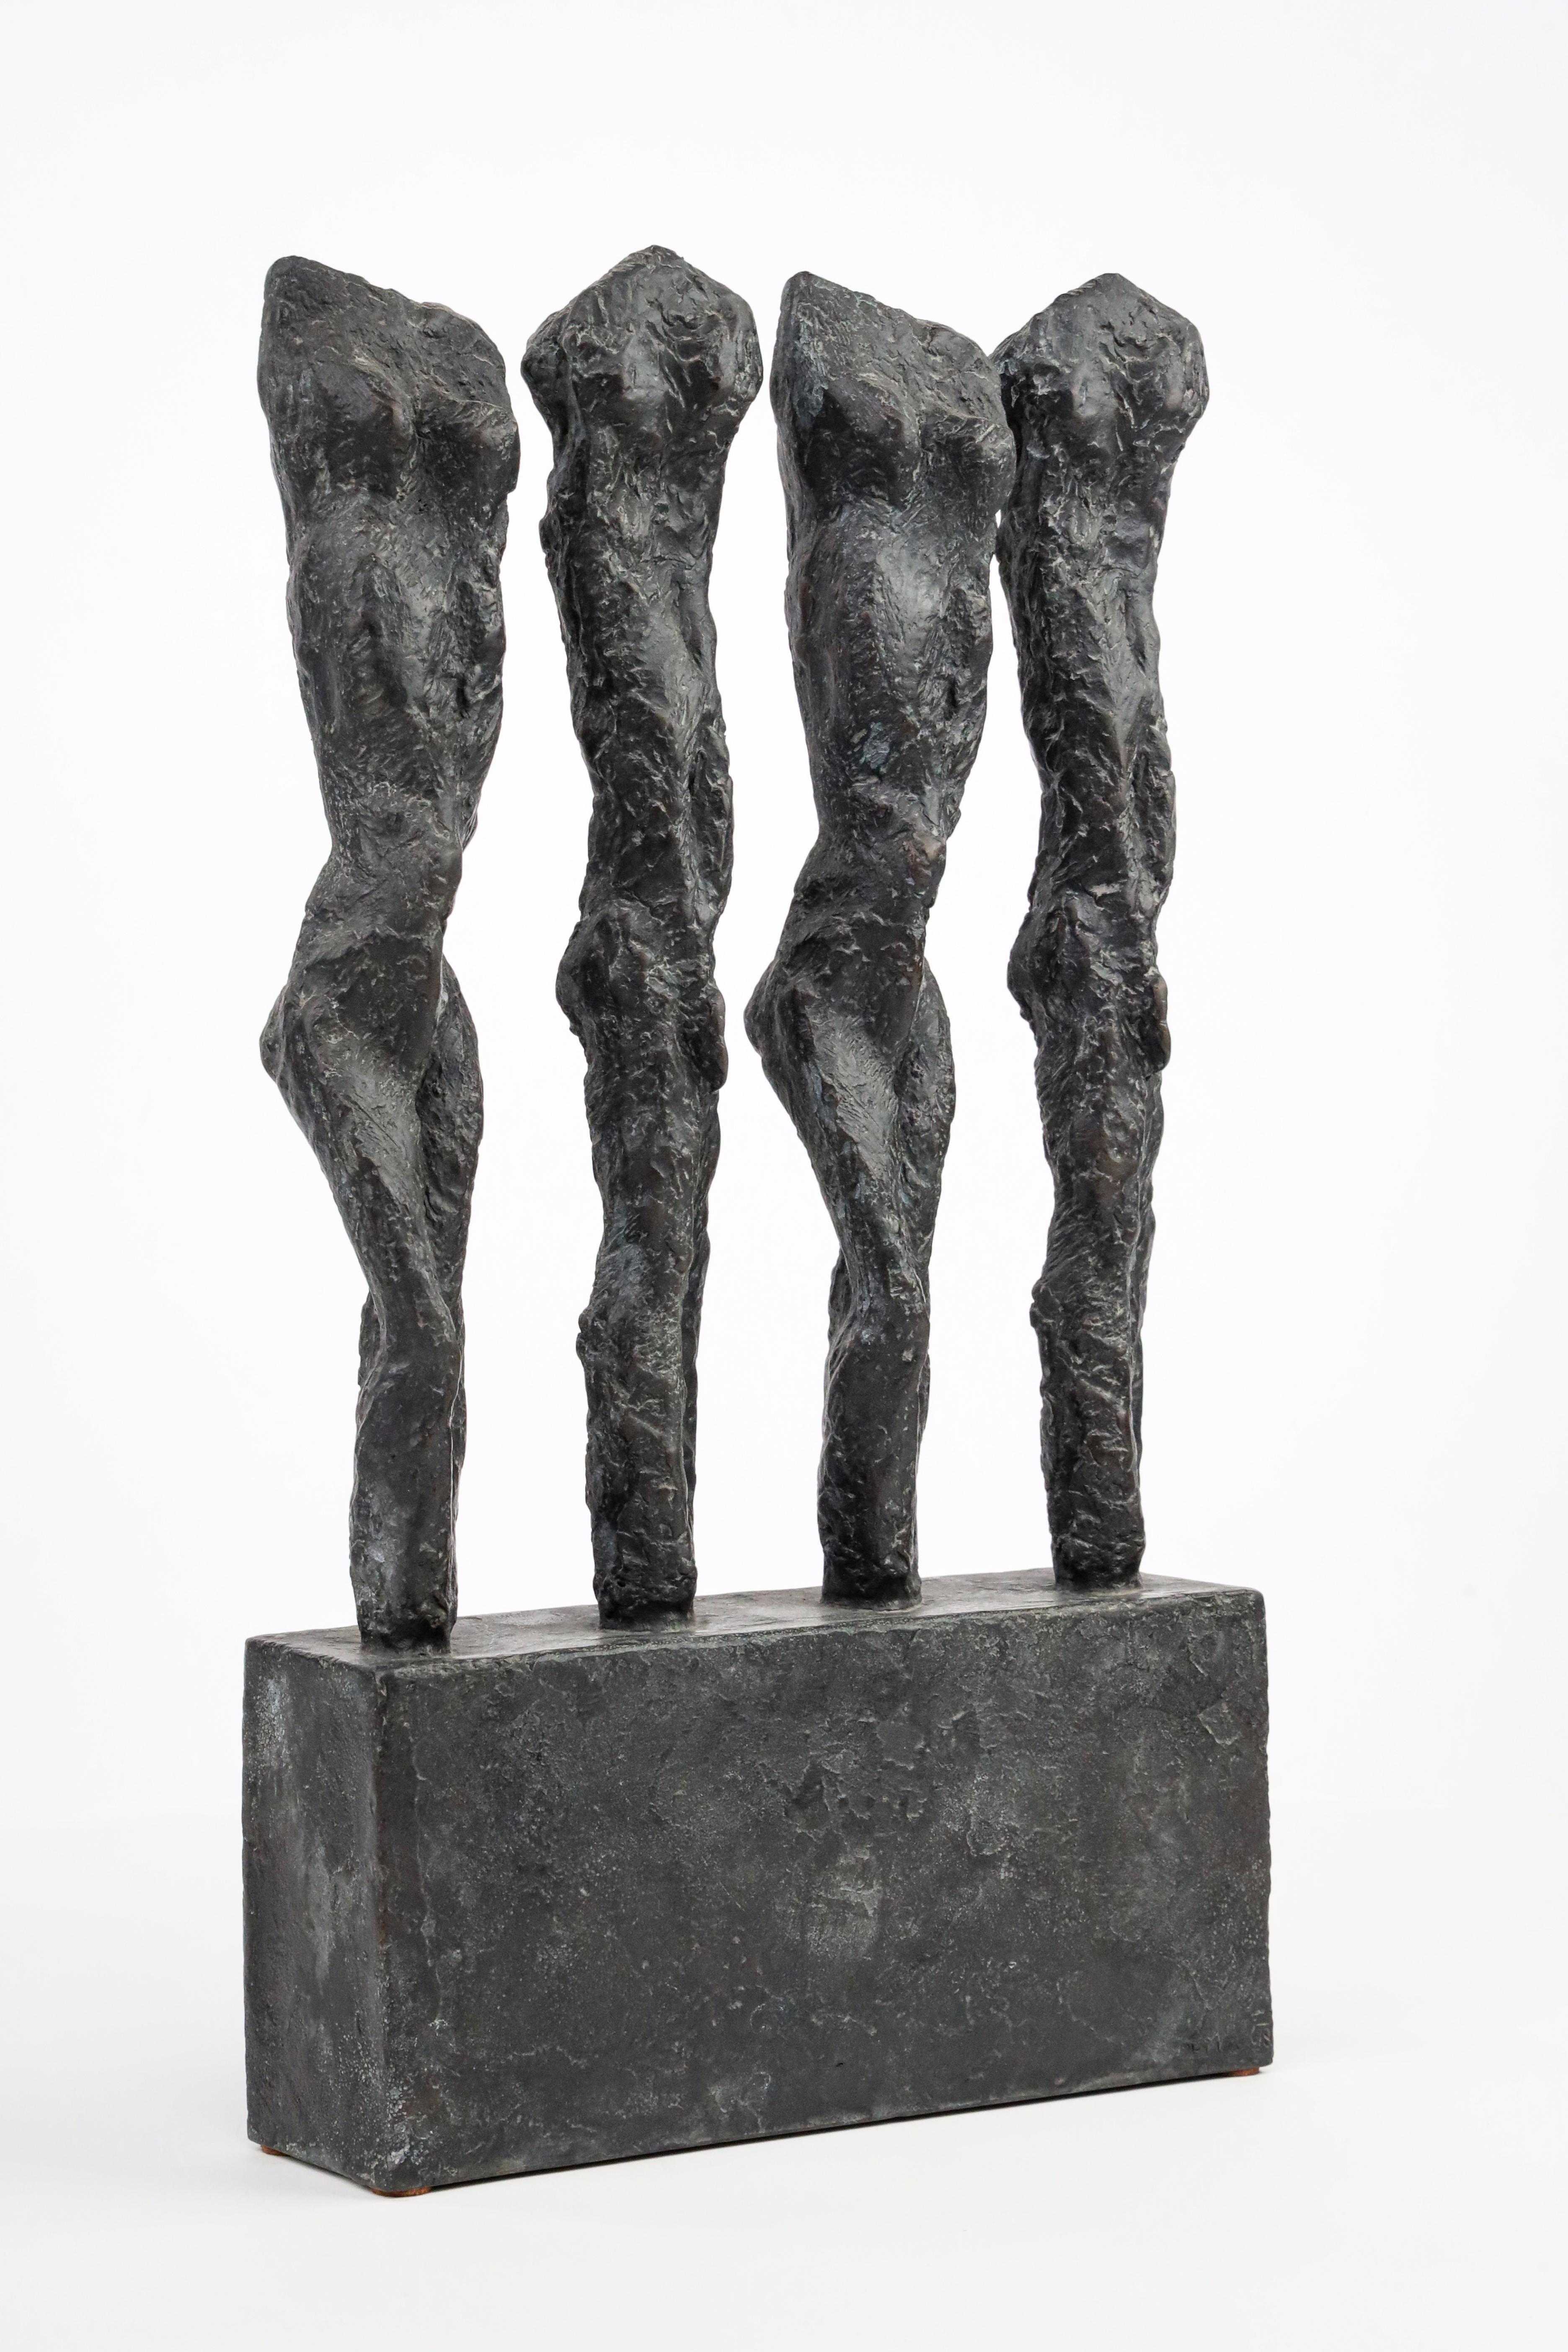 Martine Demal Figurative Sculpture – In Line von M. Demal - Bronzeskulptur, Gruppe von weiblichen Figuren, halb-abstrakte Skulptur